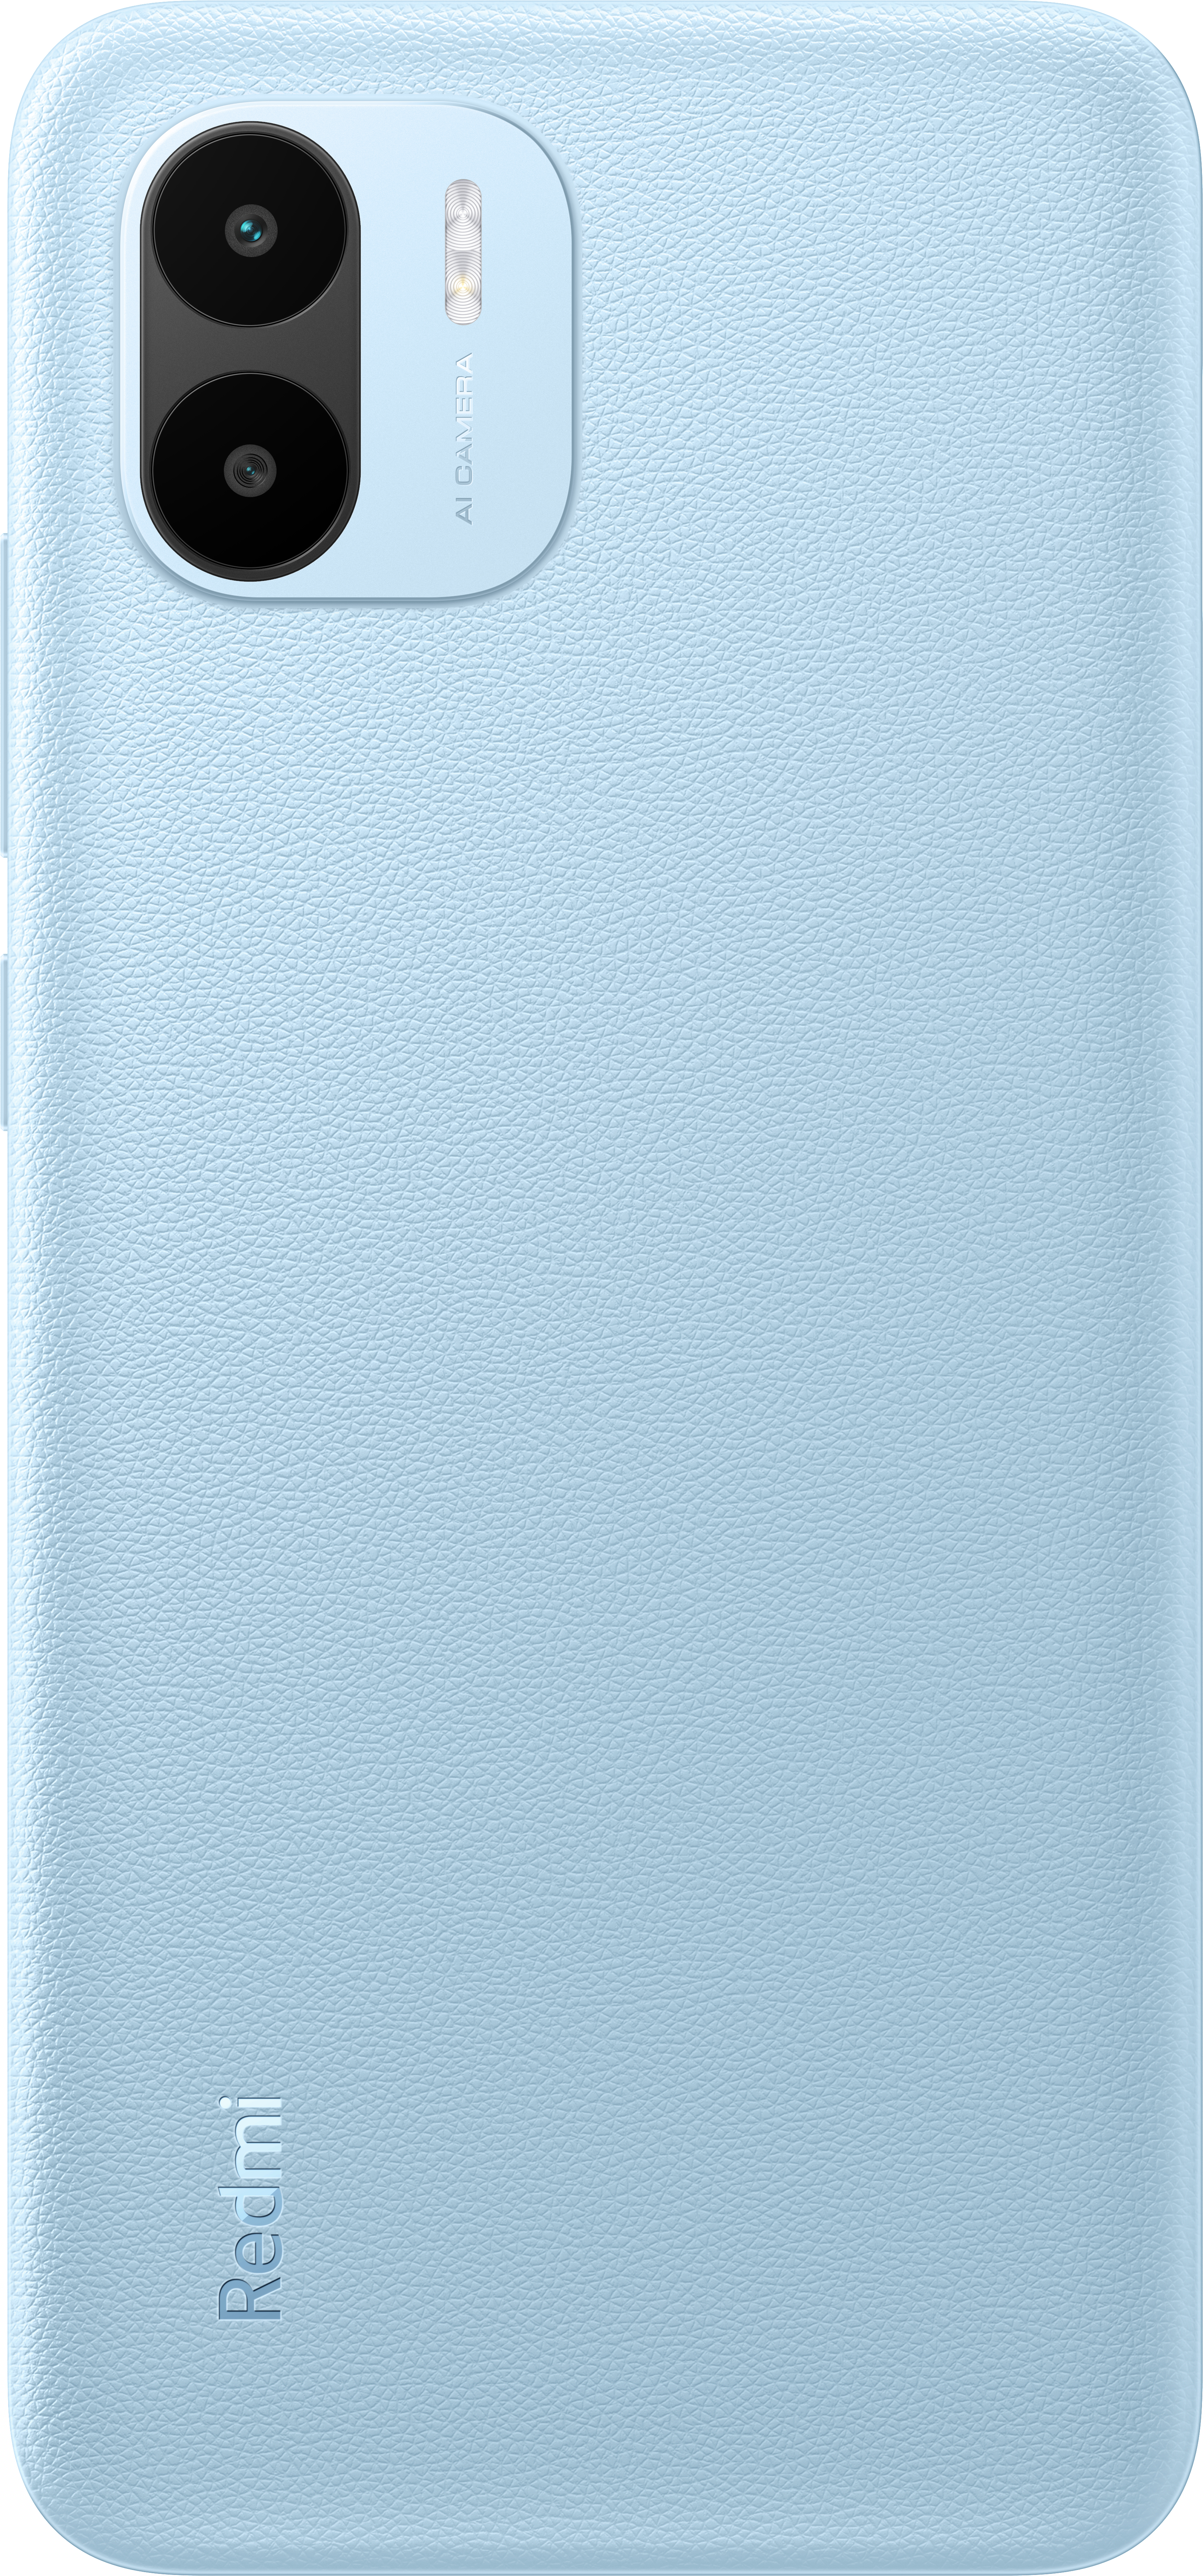 XIAOMI Redmi A2 32 GB Light Dual Blue SIM